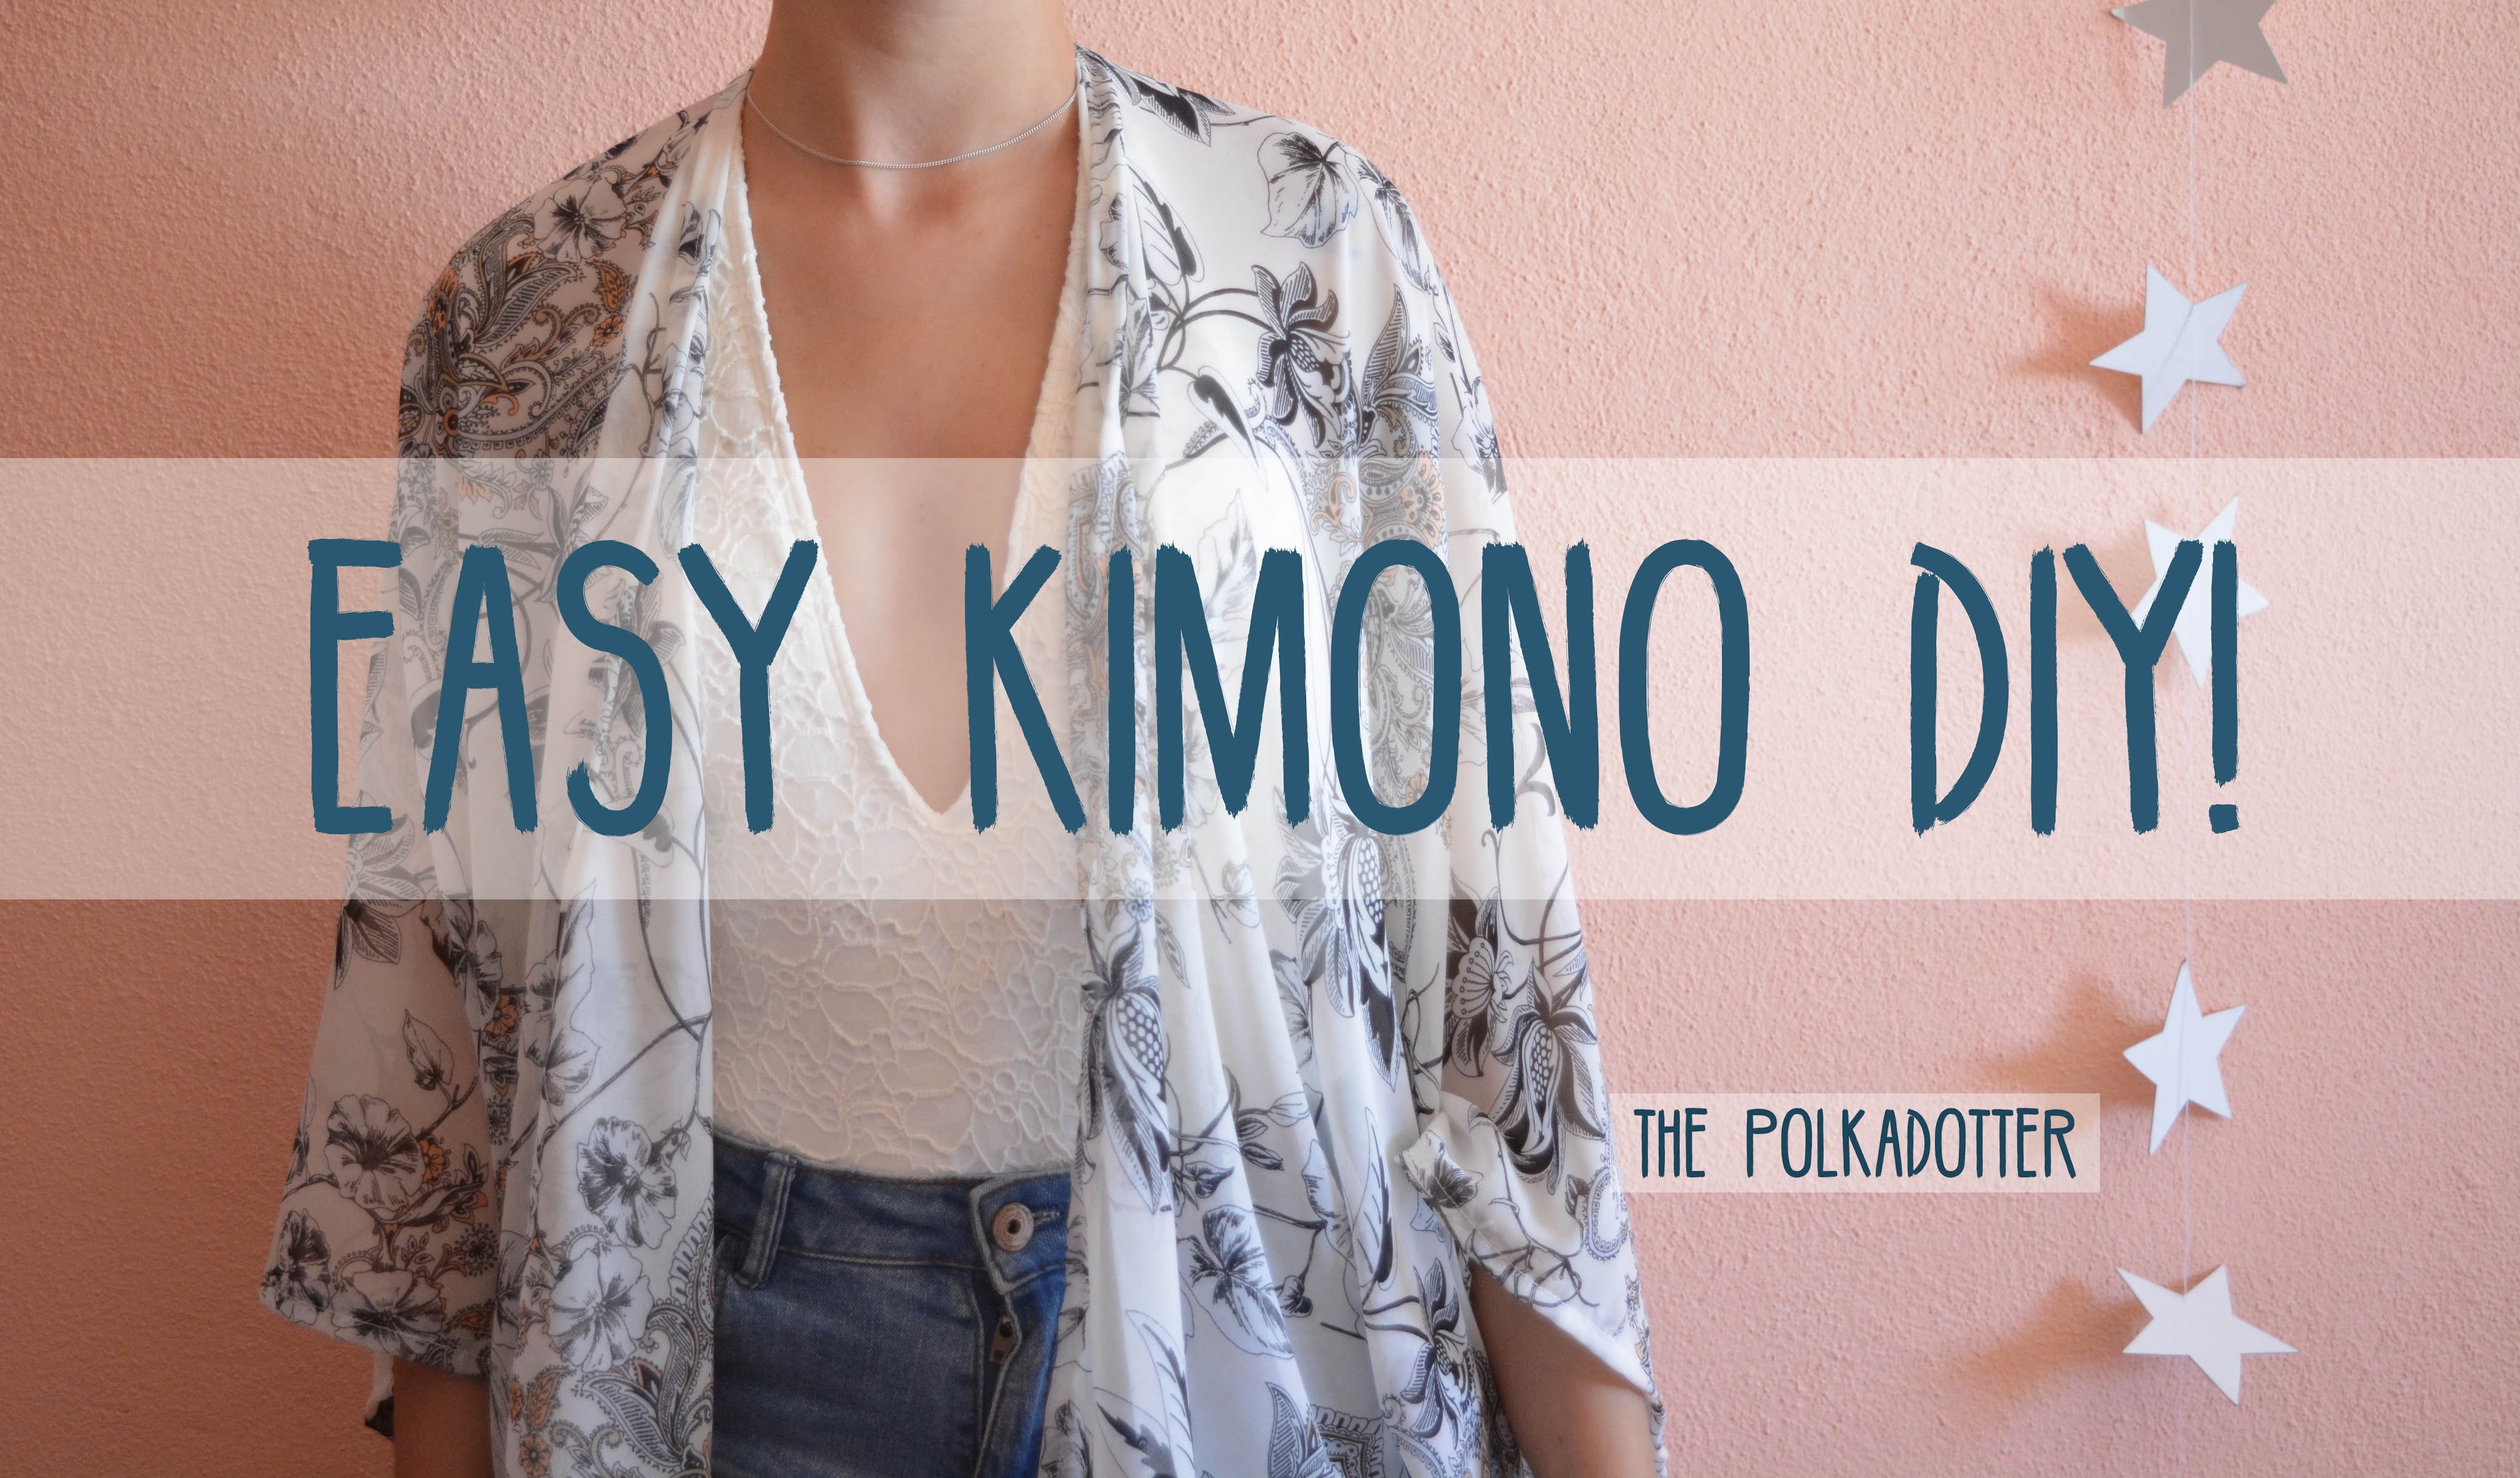 Easy Kimono DIY, 4 Steps